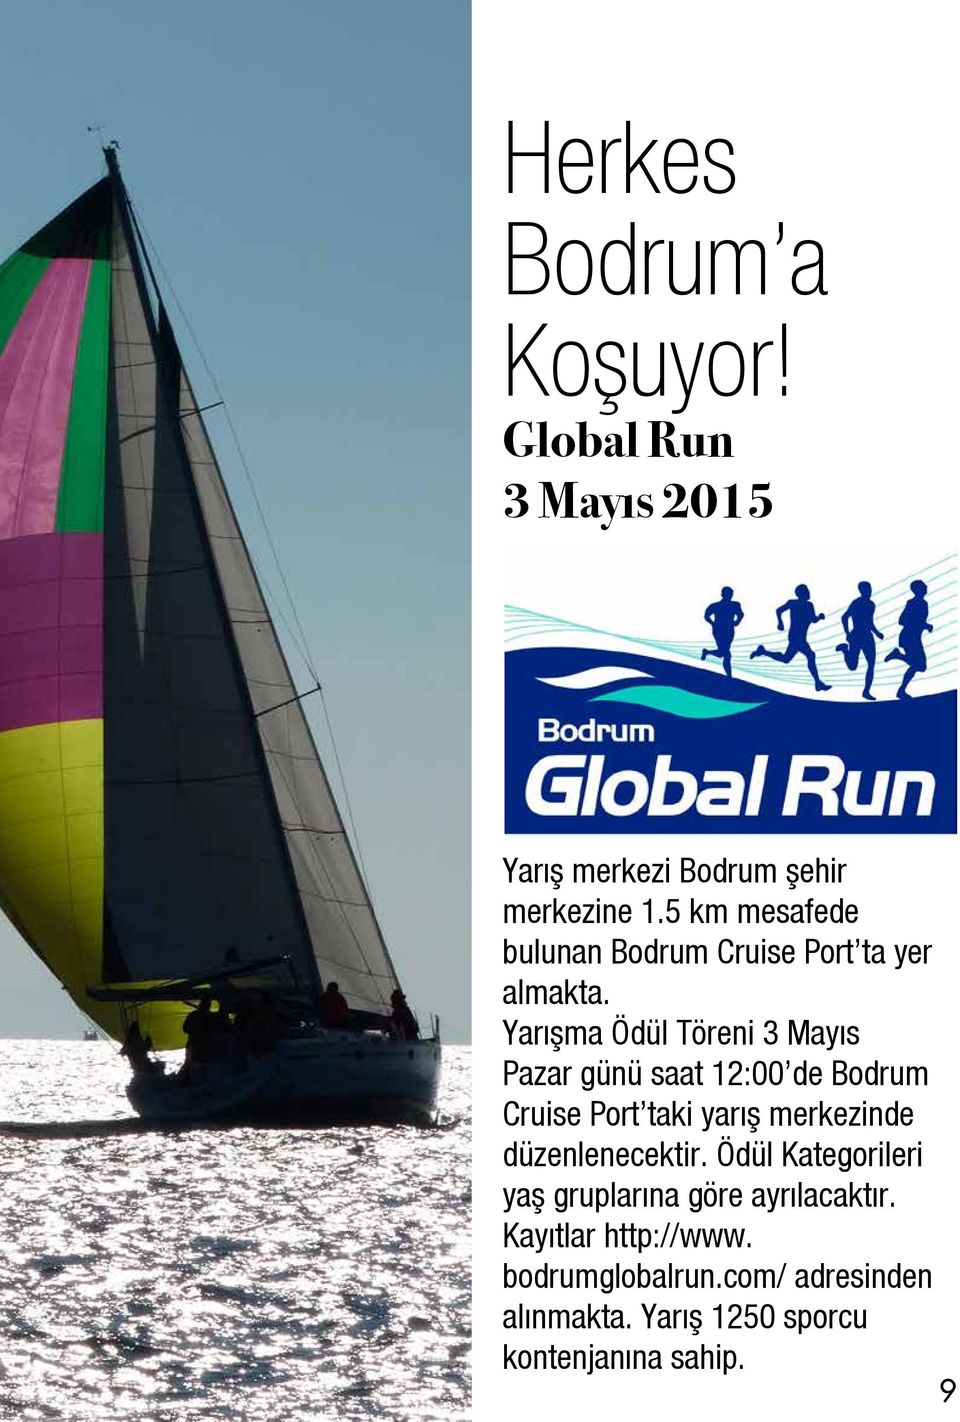 Yarışma Ödül Töreni 3 Mayıs Pazar günü saat 12:00 de Bodrum Cruise Port taki yarış merkezinde